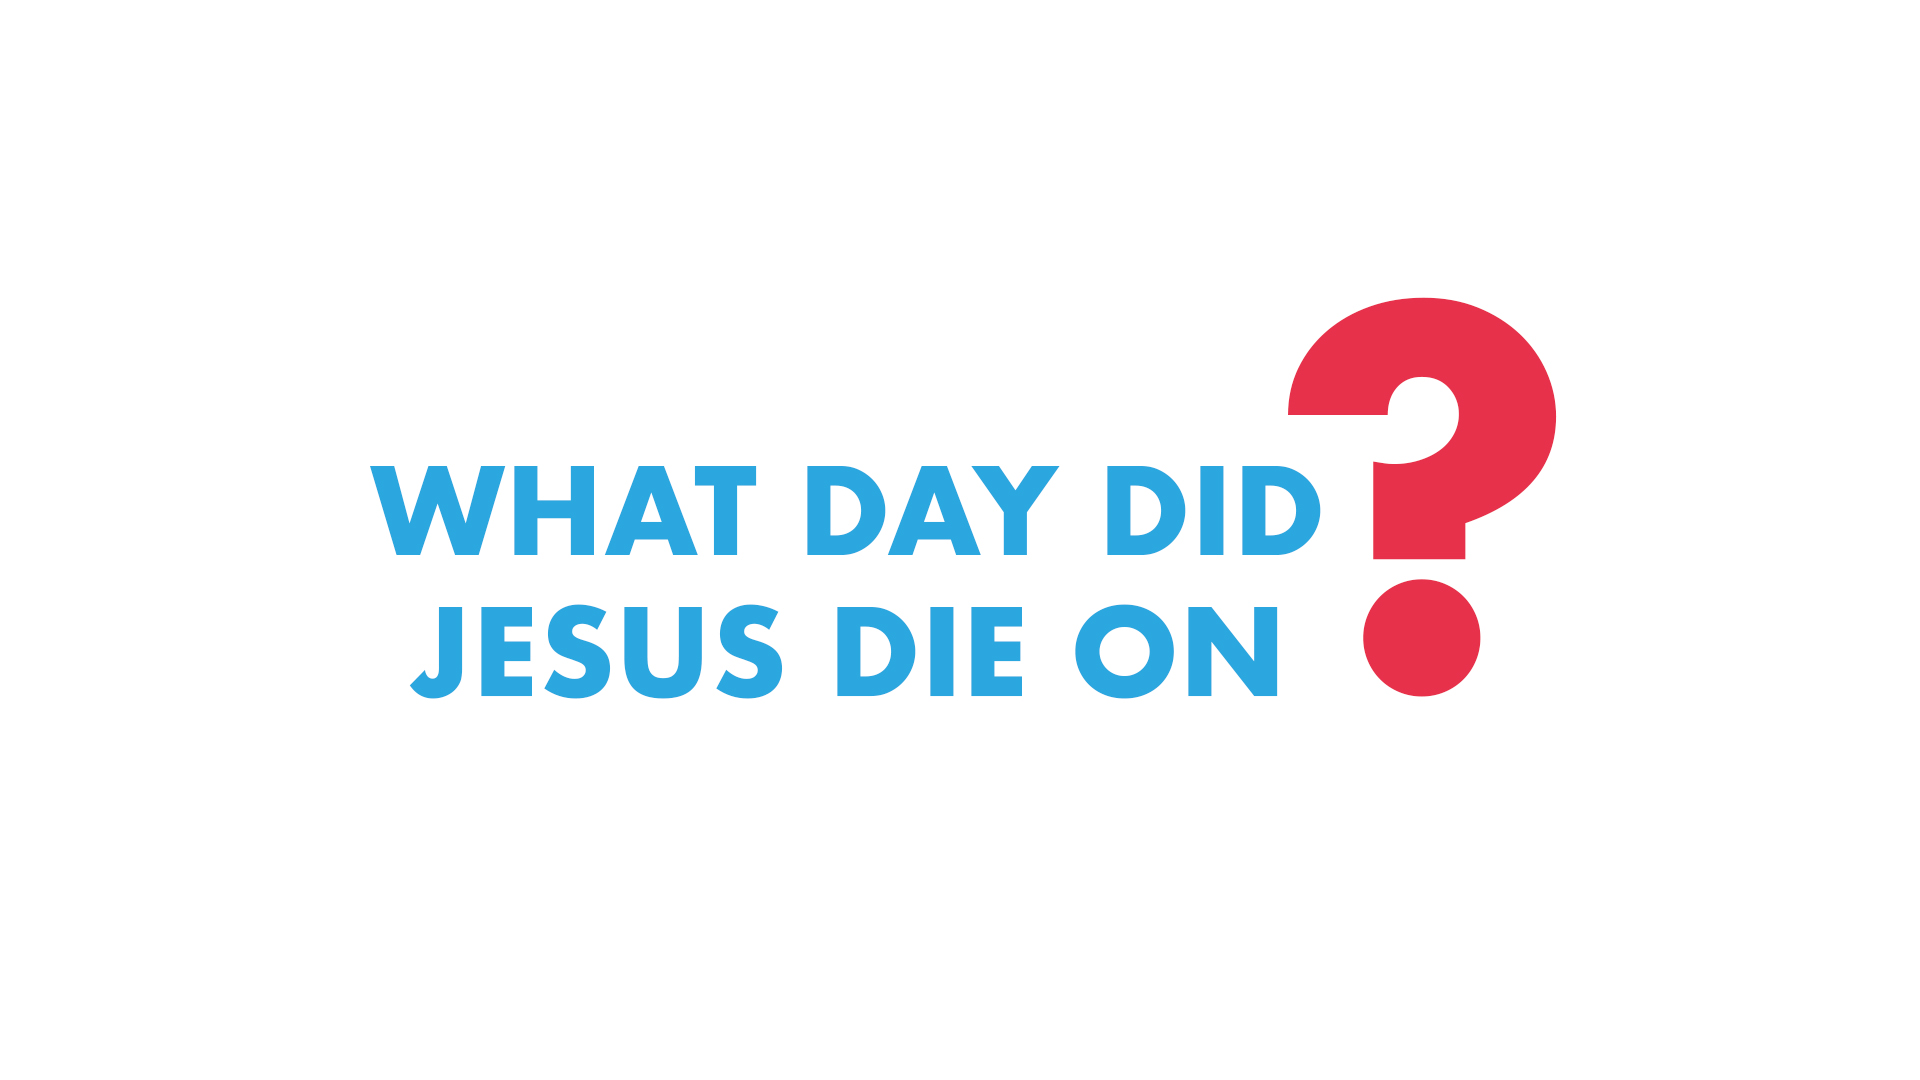 What Day did Jesus Die On?